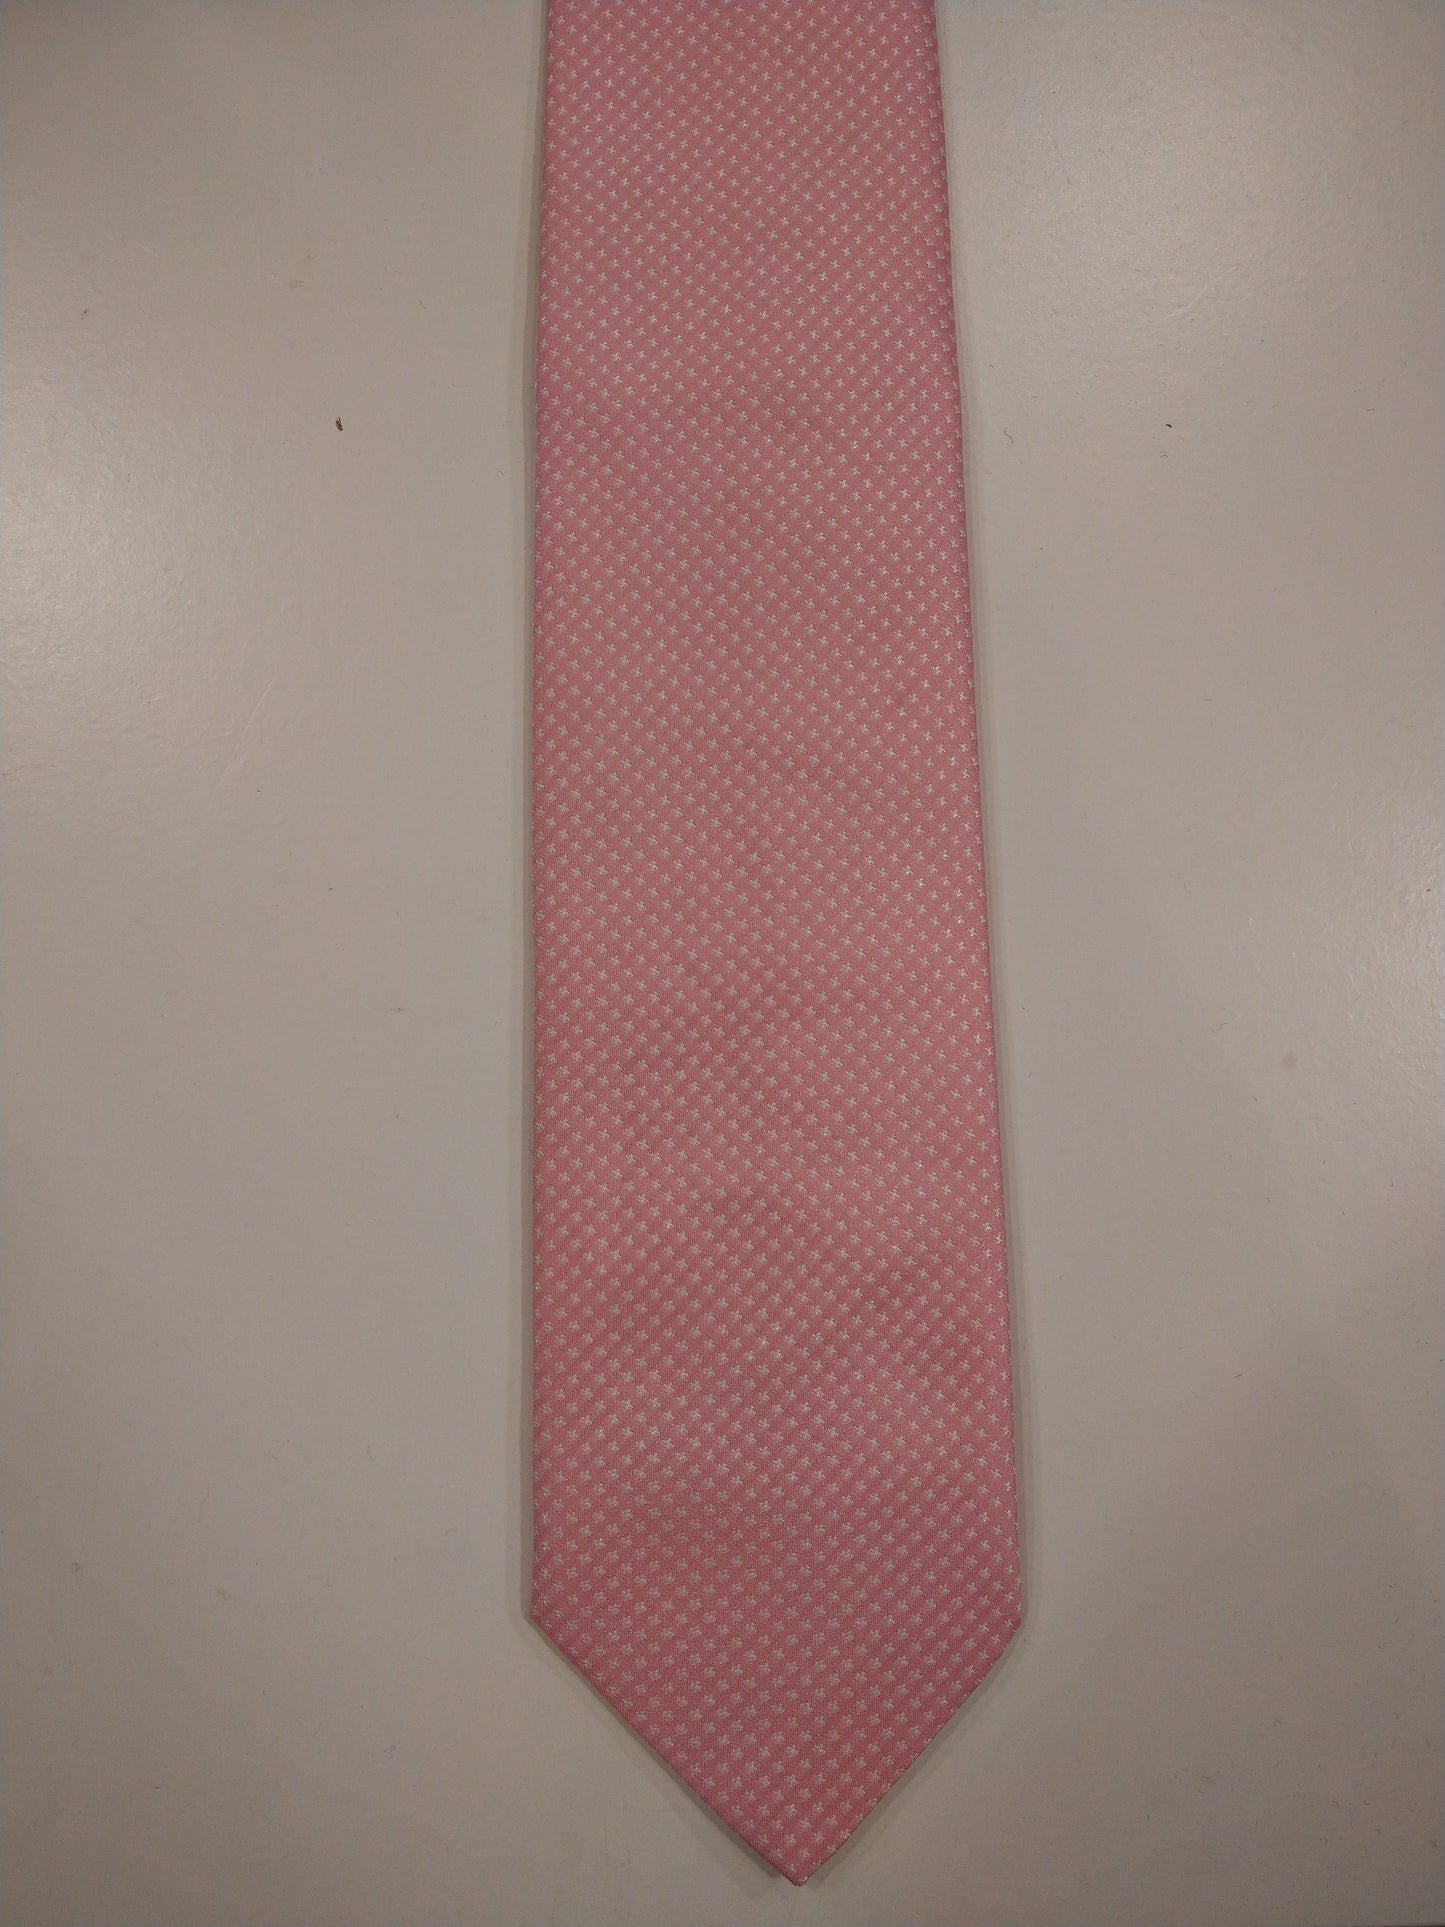 Veronelli polyester stropdas. Roze motief.